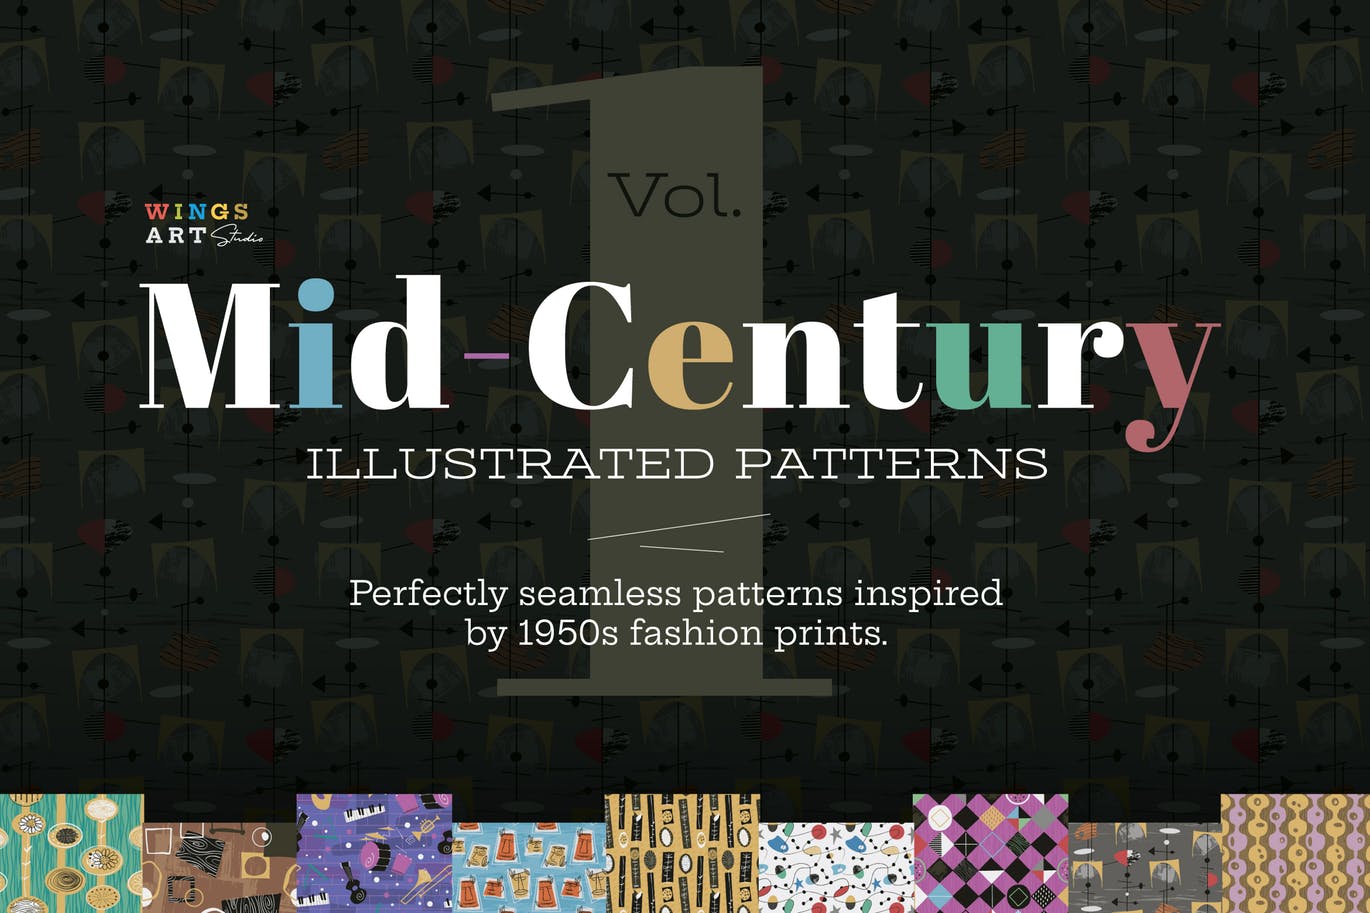 20世纪中叶复古时尚无缝图案纹理素材包 Mid-Century Illustrated Patterns插图